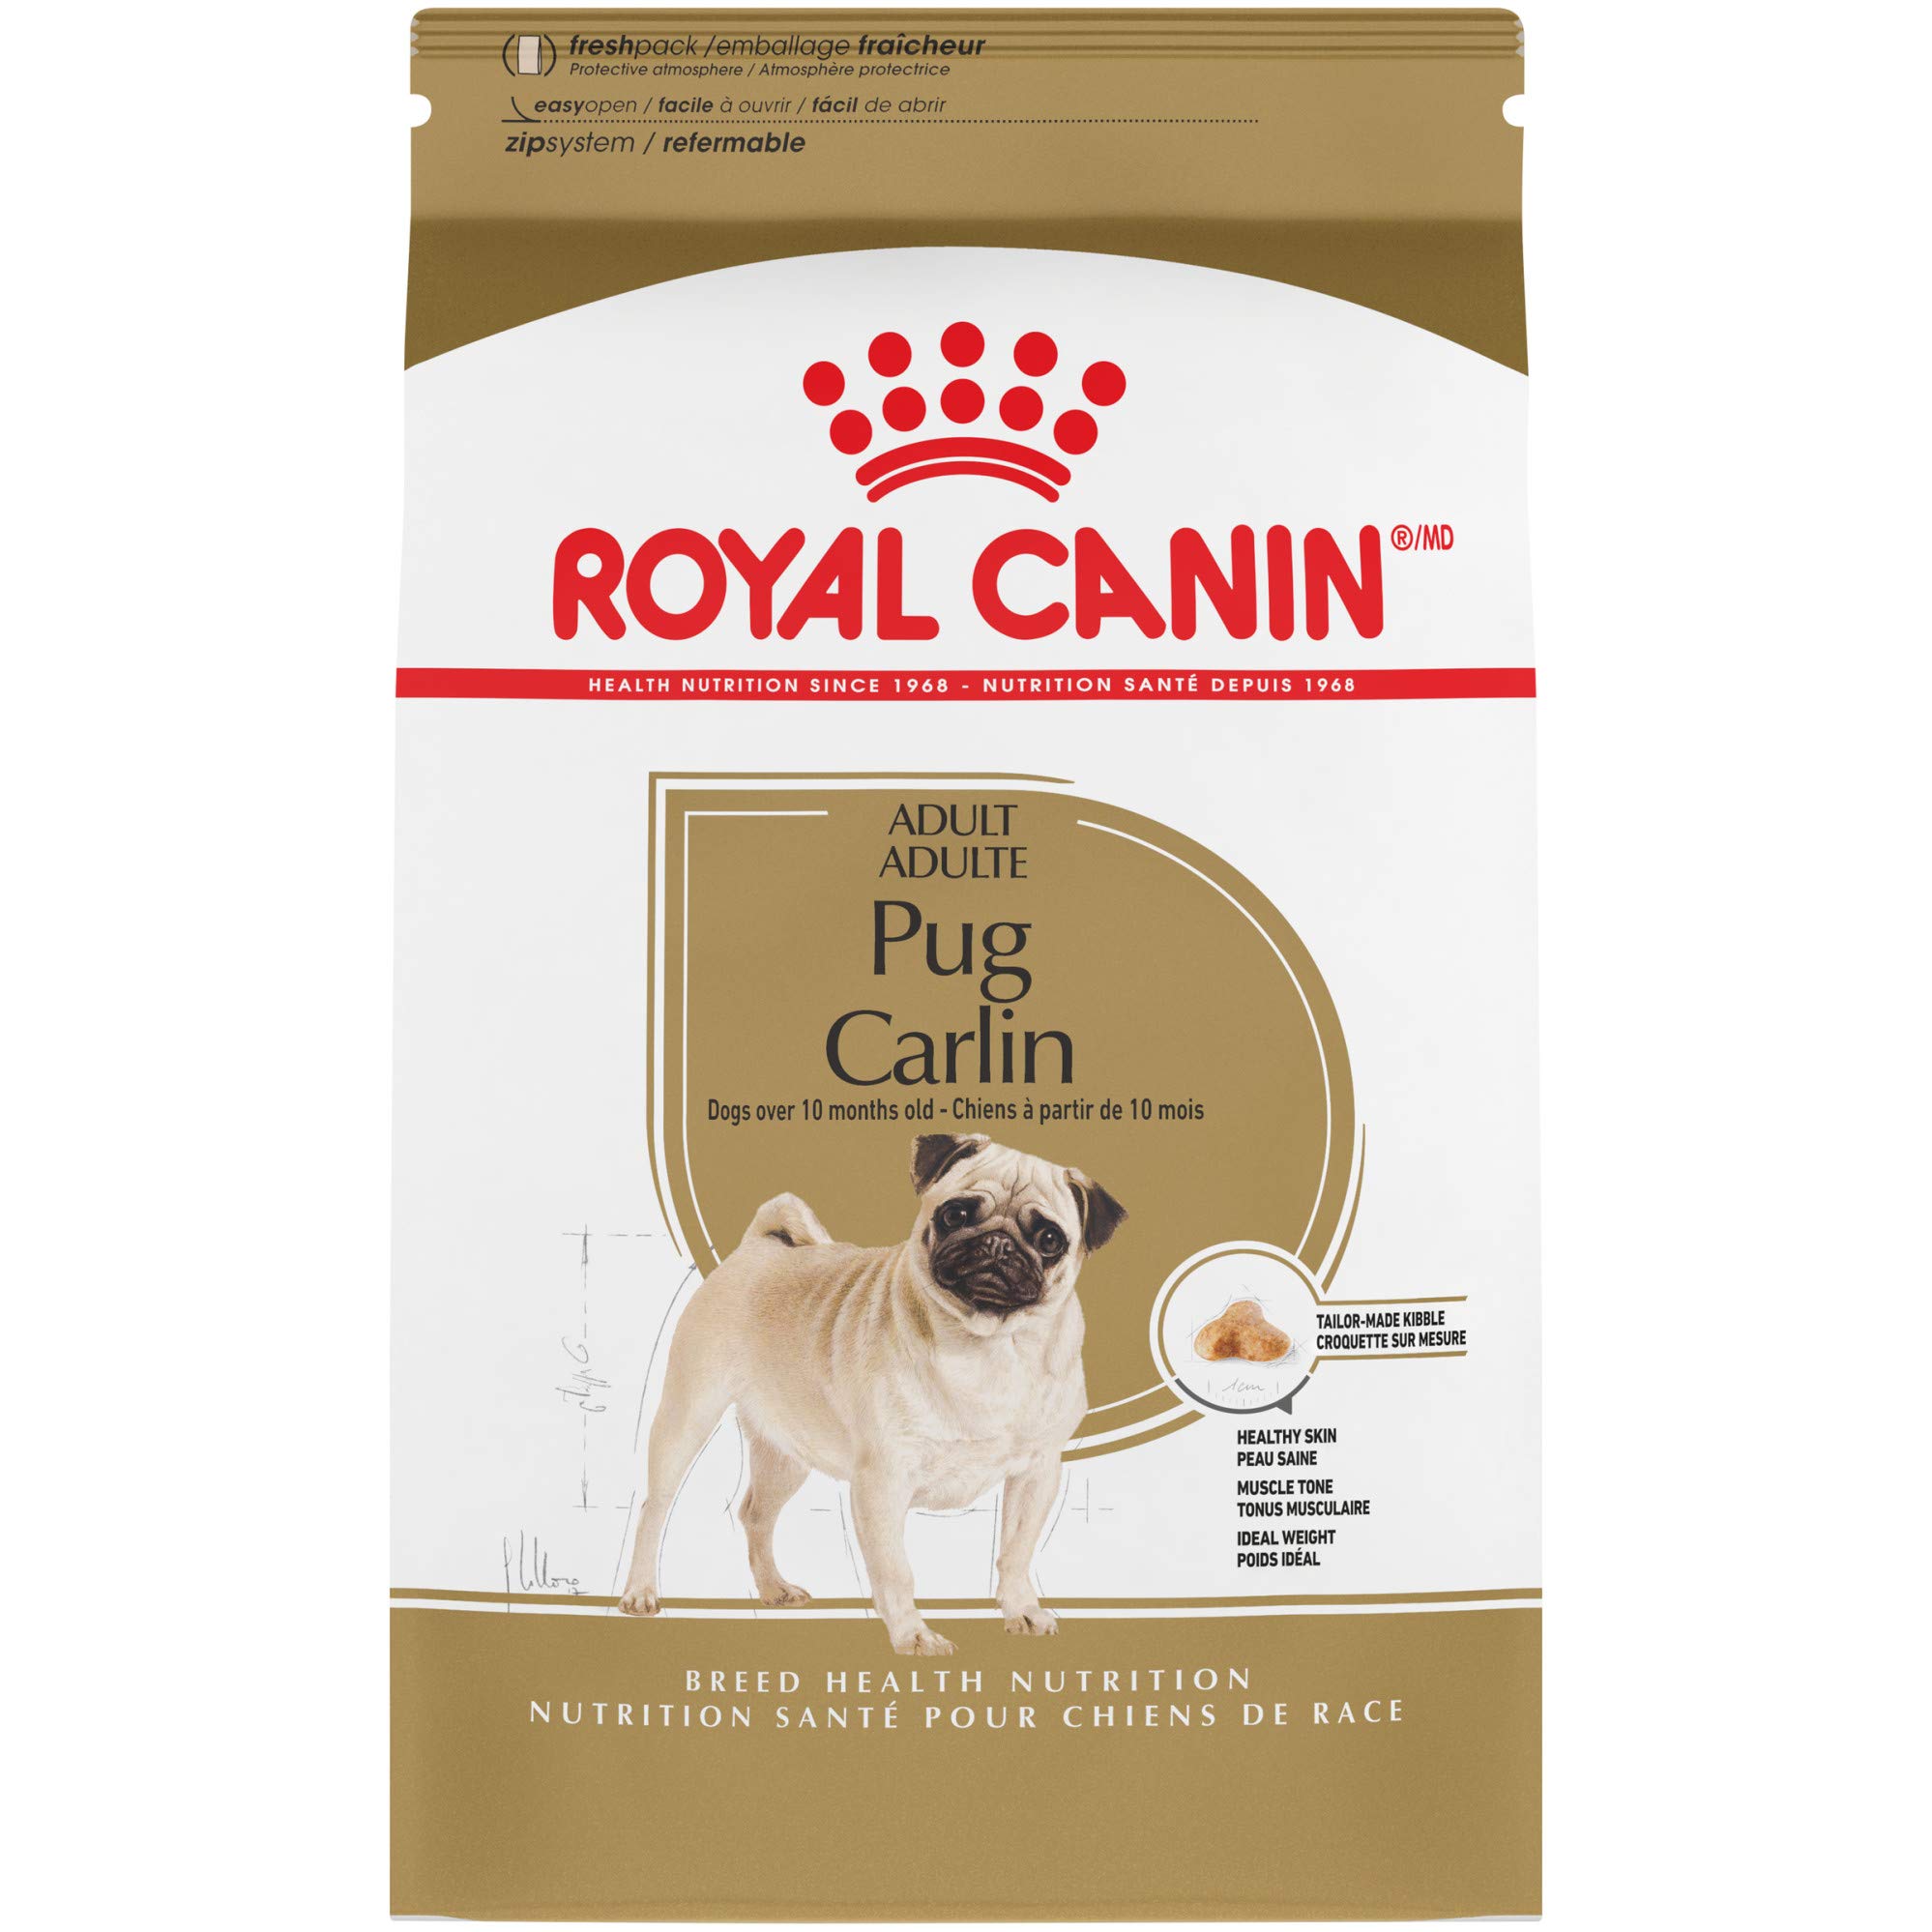 Royal Canin تولد الصحة والتغذية الصلصال الكبار أغذية ال...